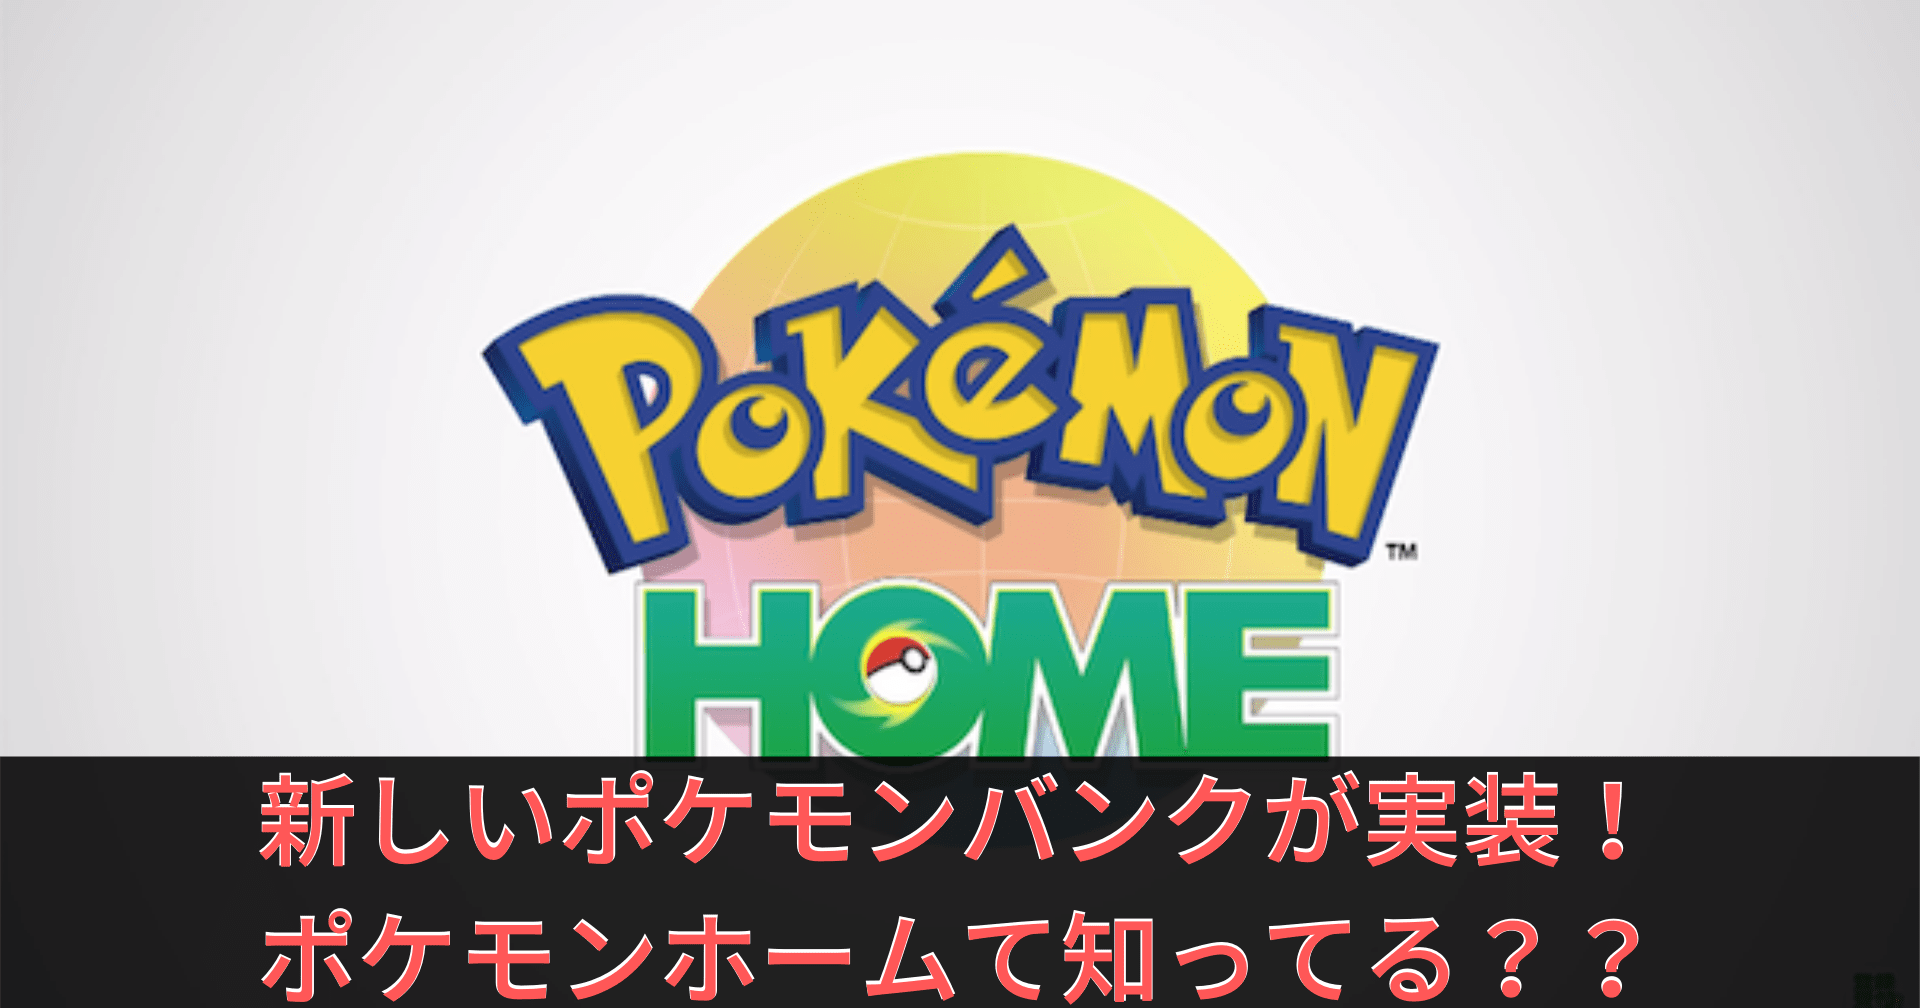 ポケモン ホーム 3ds ポケモンバンク から Pokemon Home へポケモンを送る方法